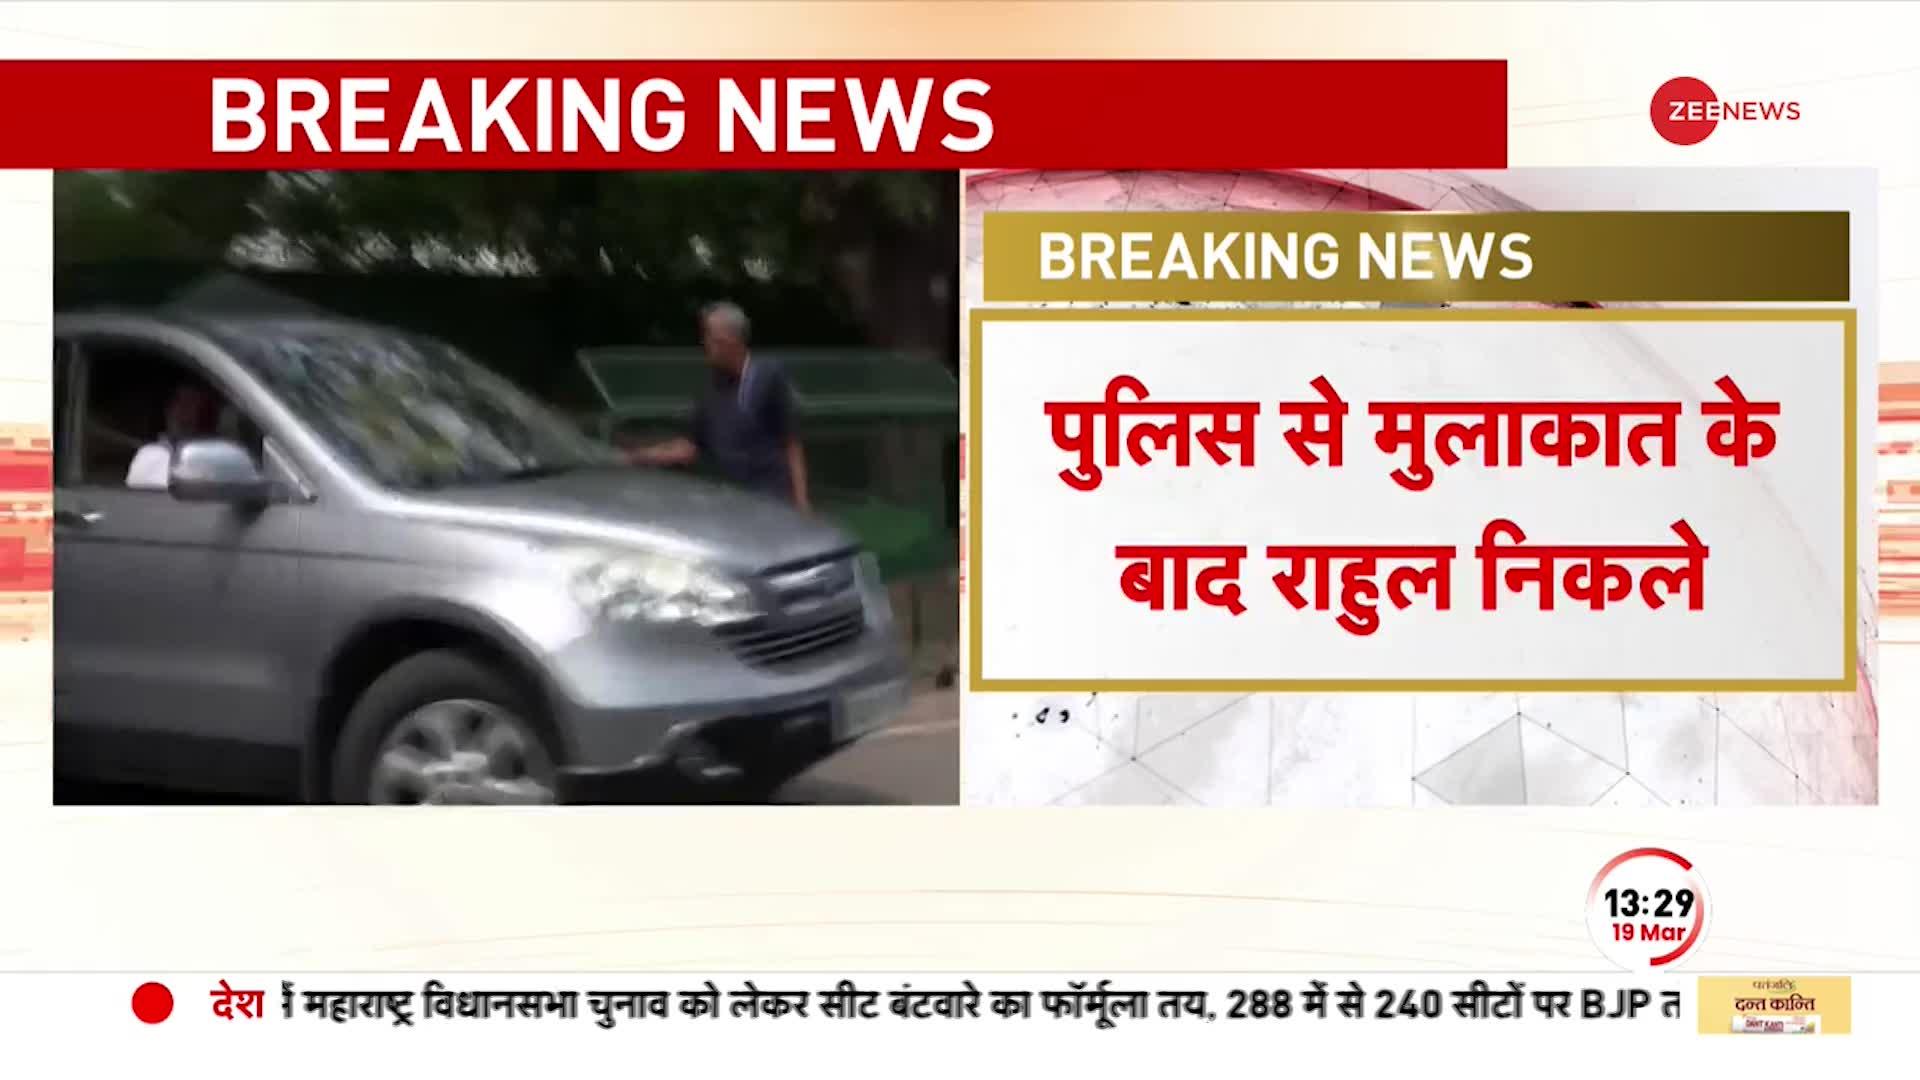 Delhi: घर से बाहर निकले Rahul Gandhi, आज सुबह दिल्ली पुलिस उनके आवास पर पहुंची थी